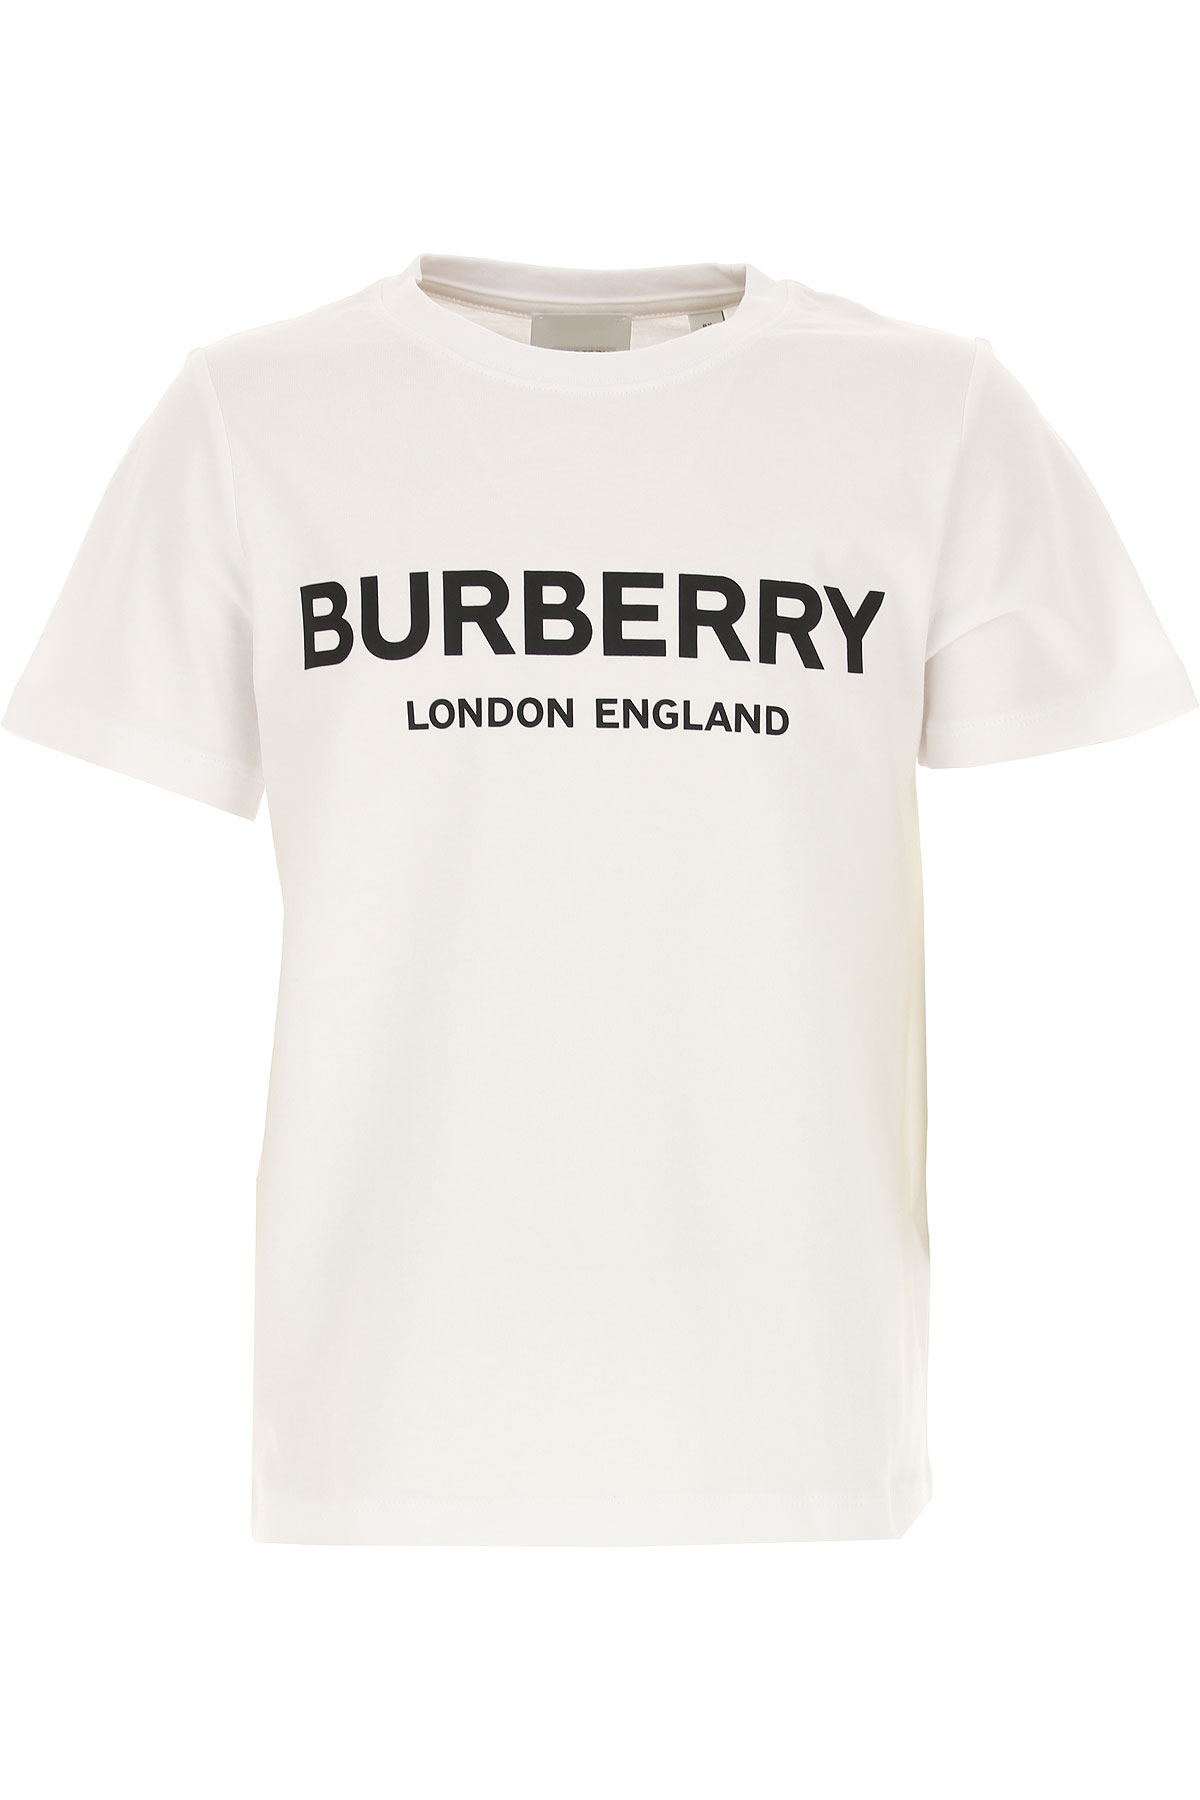 Burberry Kinder T-Shirt für Jungen Günstig im Sale, Weiss, Baumwolle, 2017, 10Y 12Y 6Y 8Y